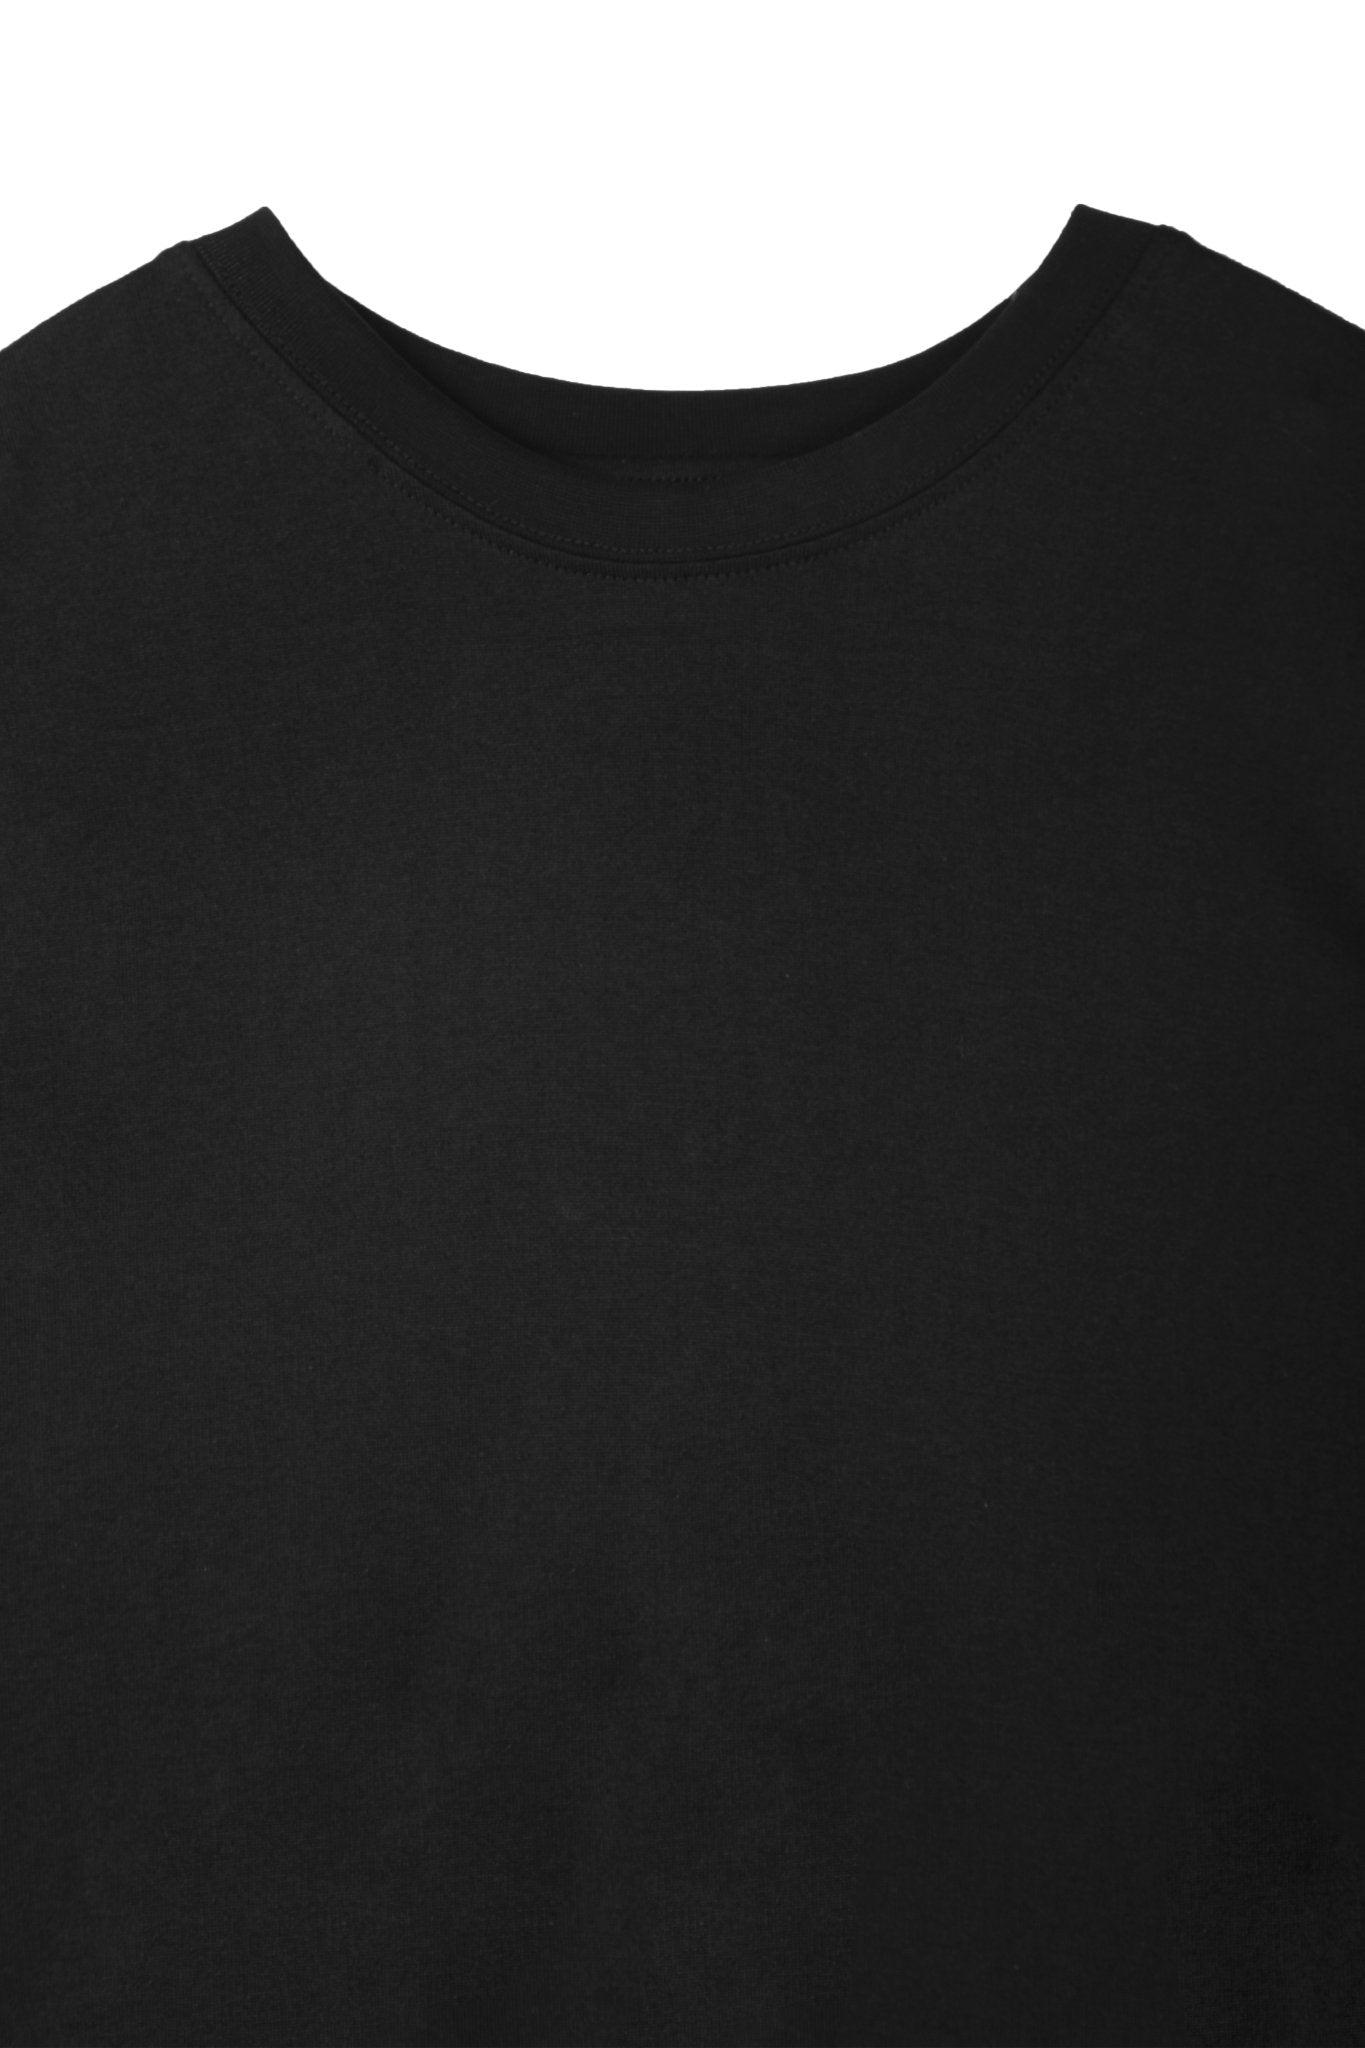 UNAWARES Black Basic Slim Fit T-shirt | MADA IN CHINA